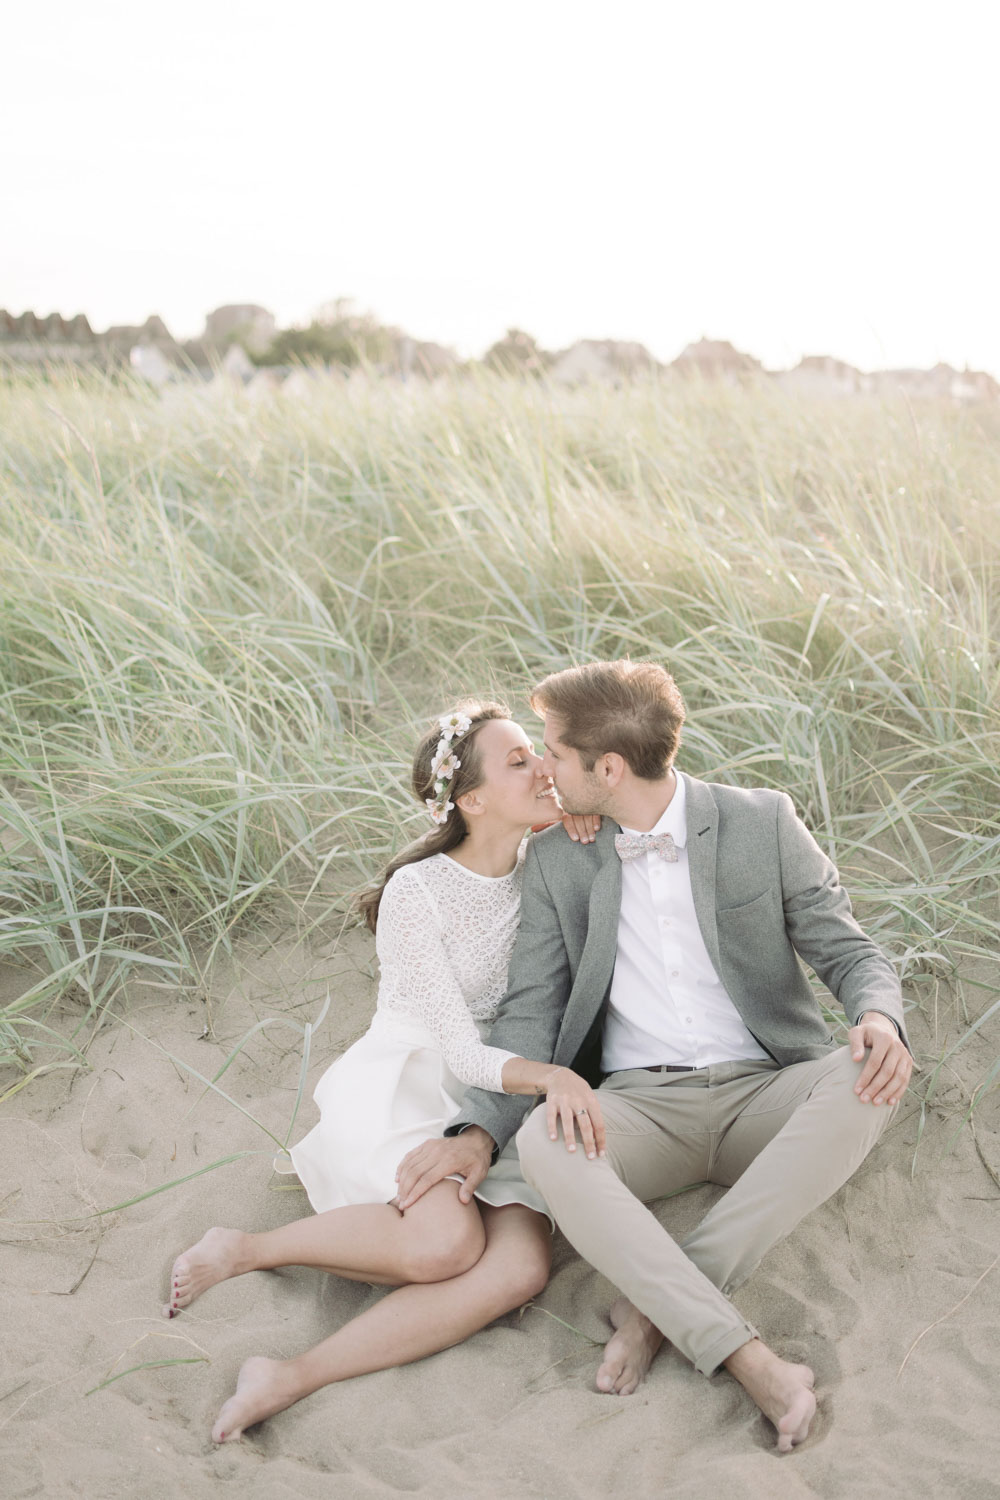 Assis dans le sable ils s'embrassent